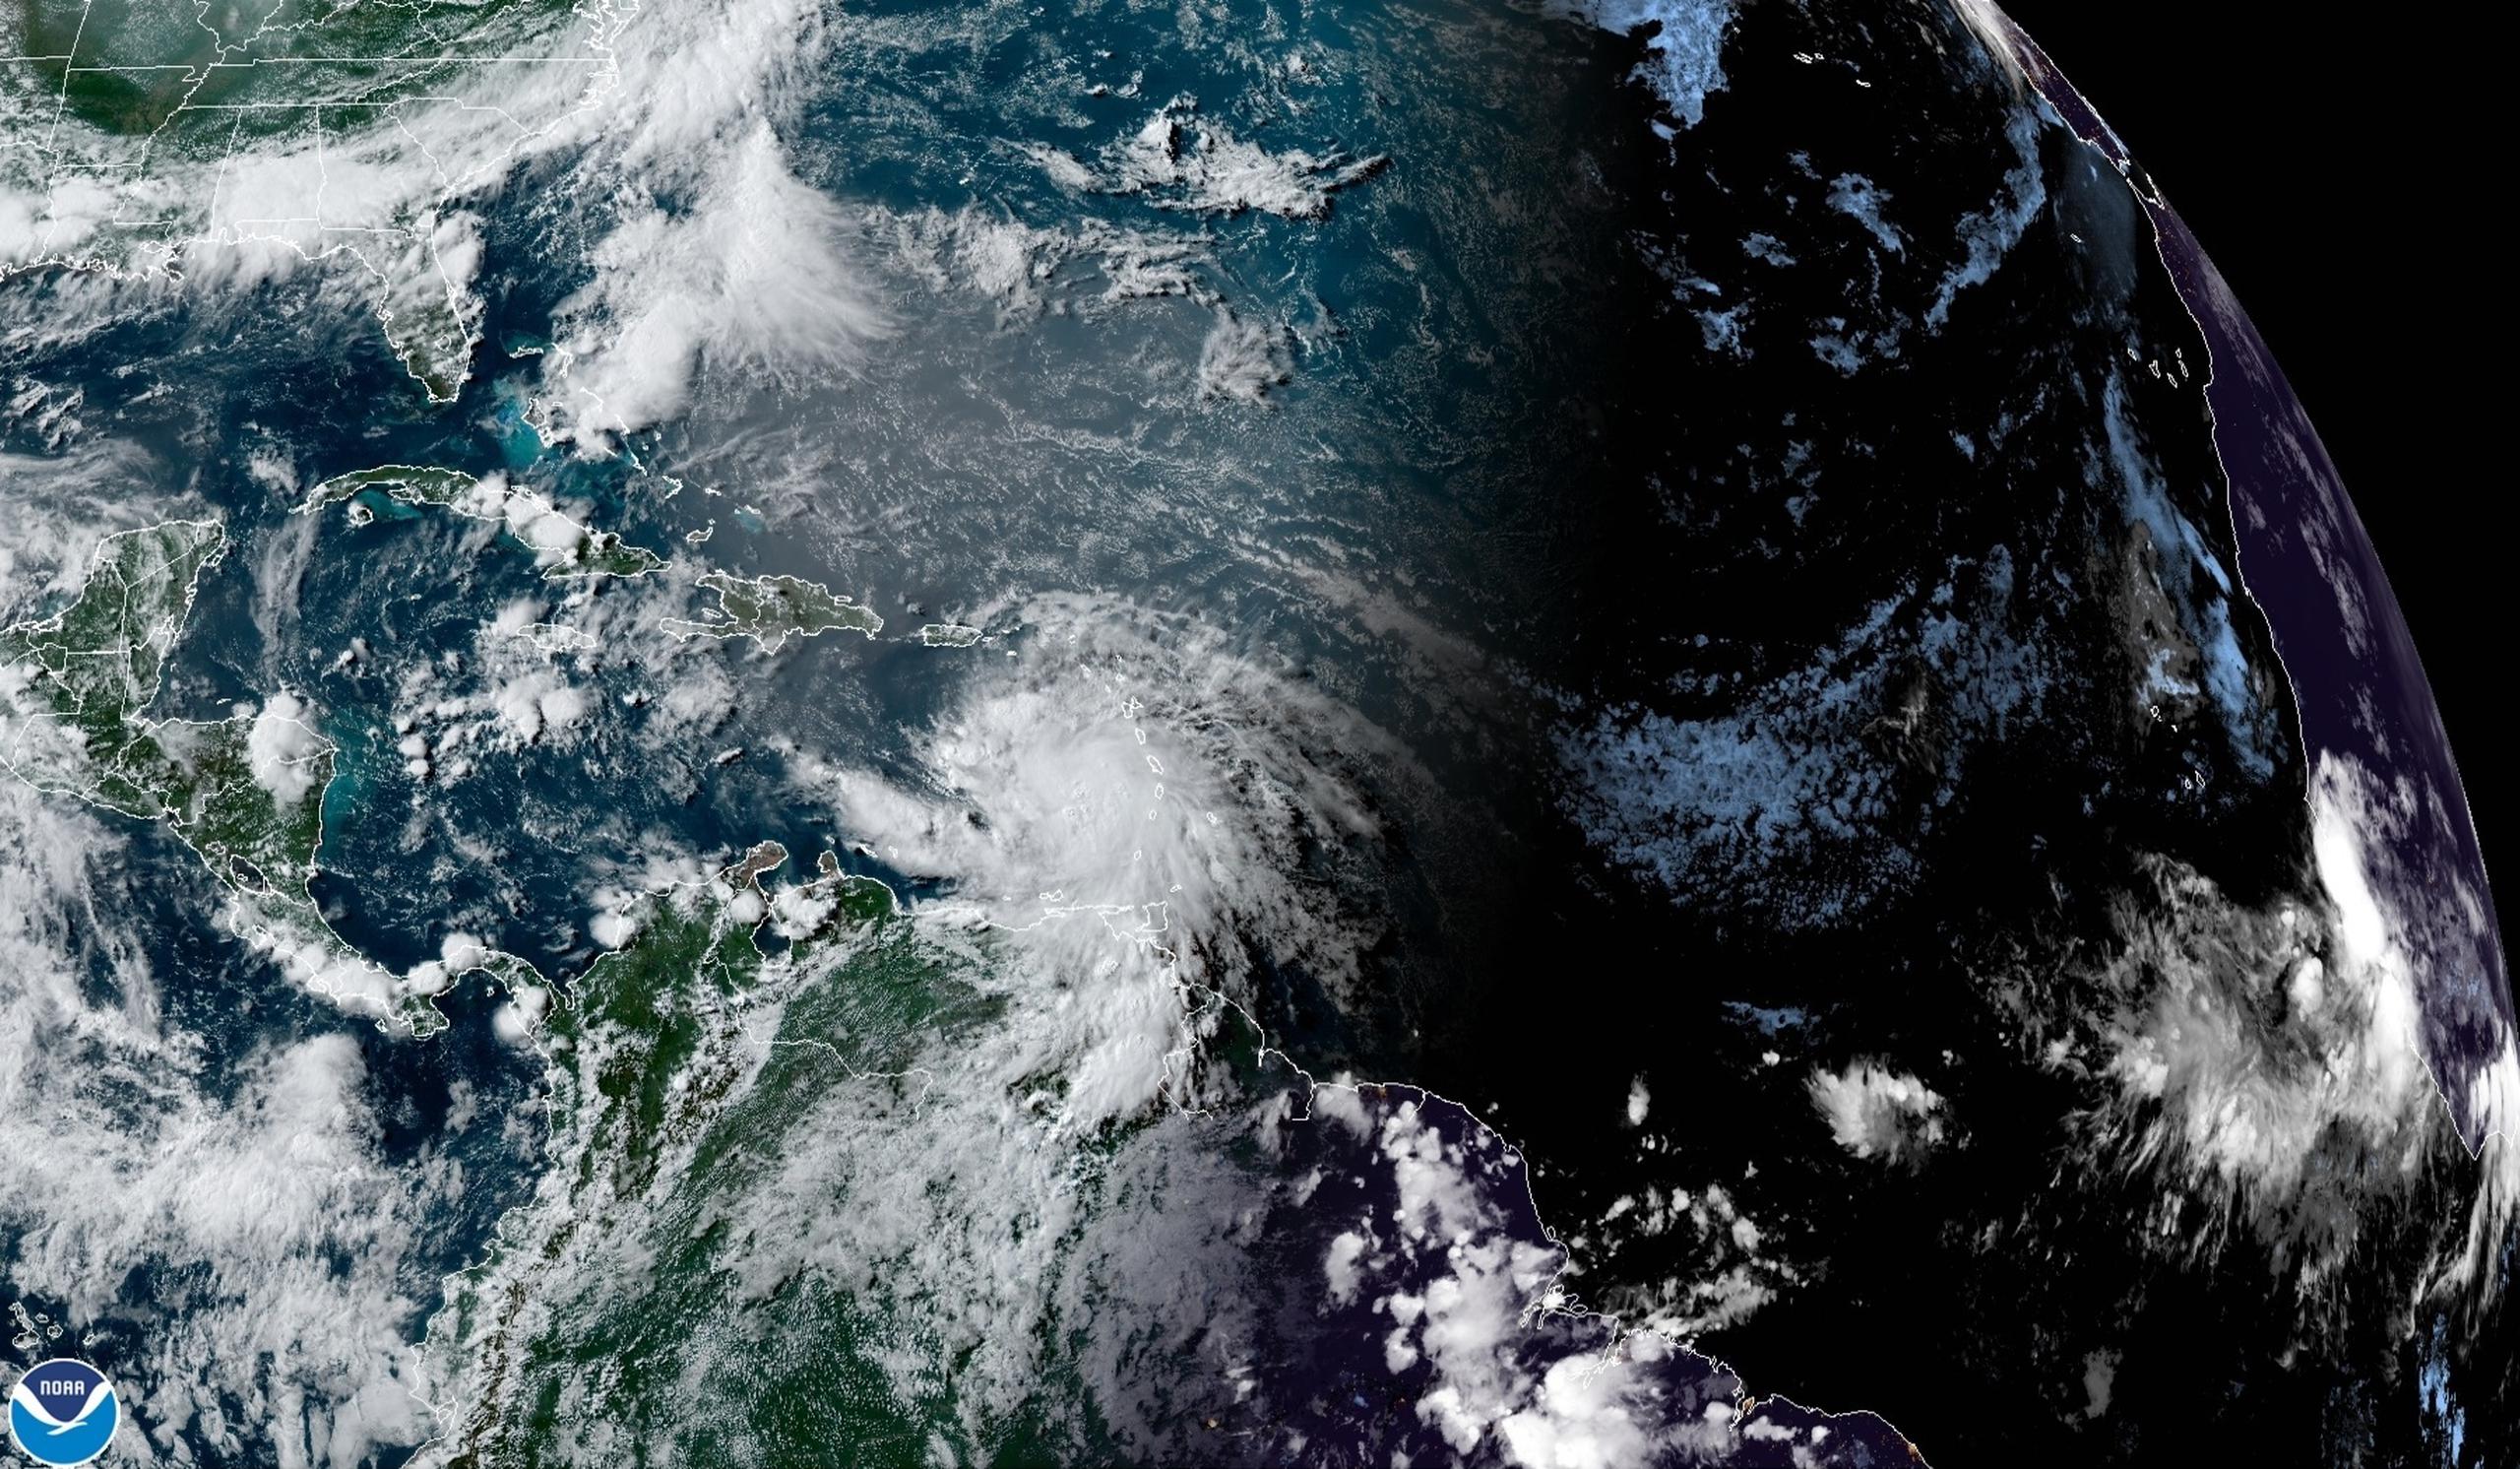 Fotografía cedida por la Oficina Nacional de Administración Oceánica y Atmosférica (NOAA) donde se muestra la localización del huracán Elsa en el Atlántico. EFE/ Noaa-nhc